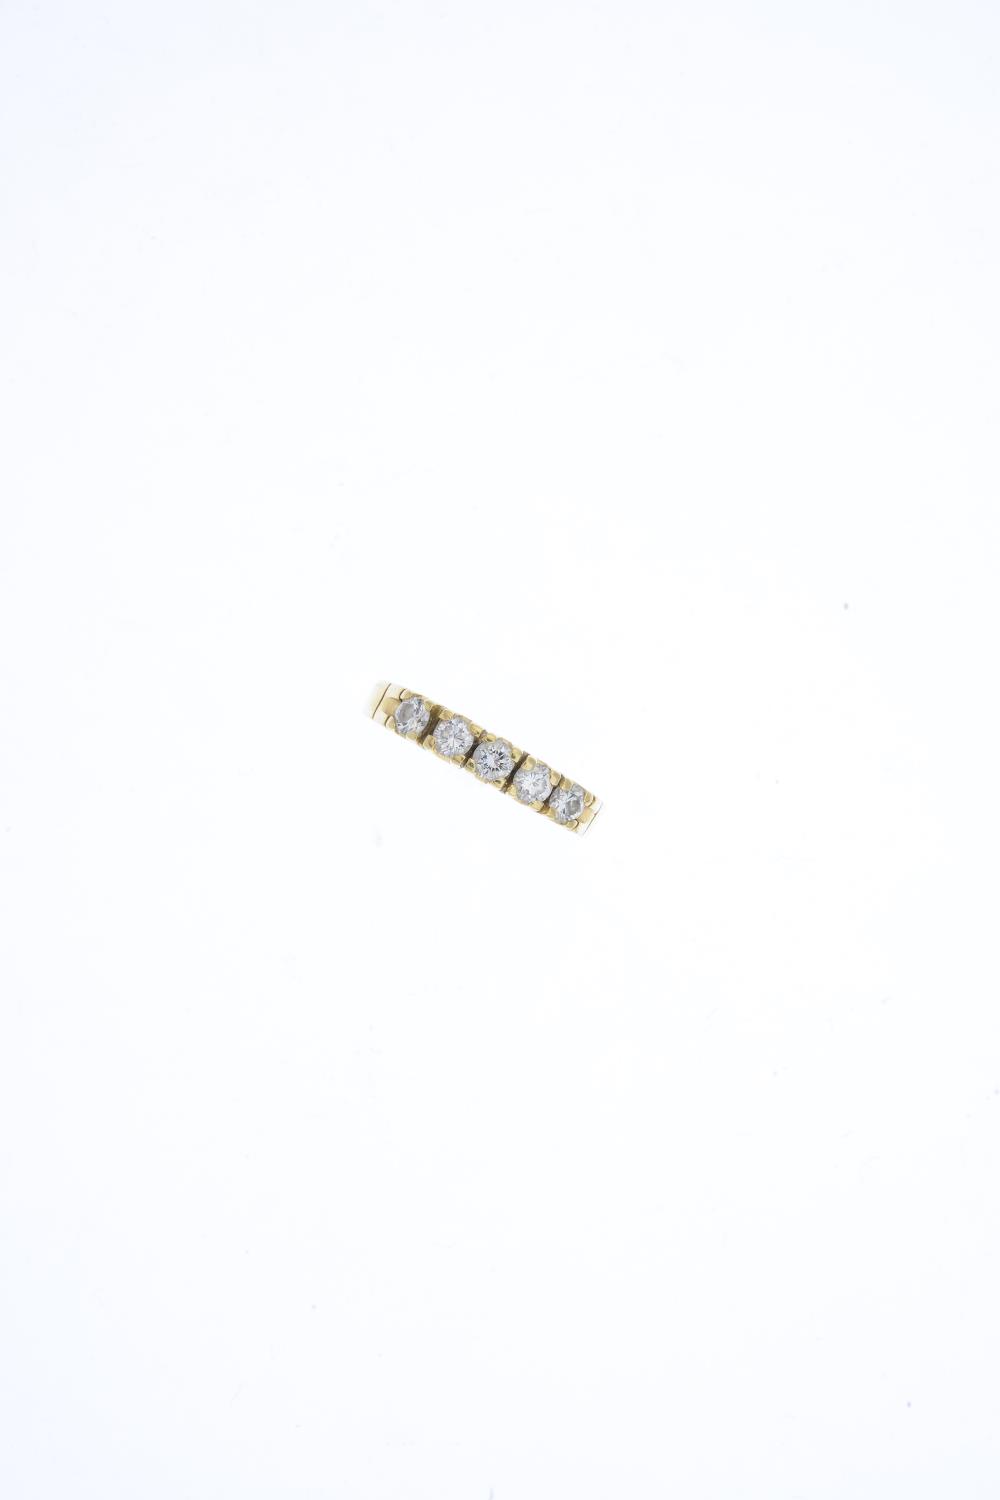 A platinum diamond single-stone ring. - Image 4 of 6